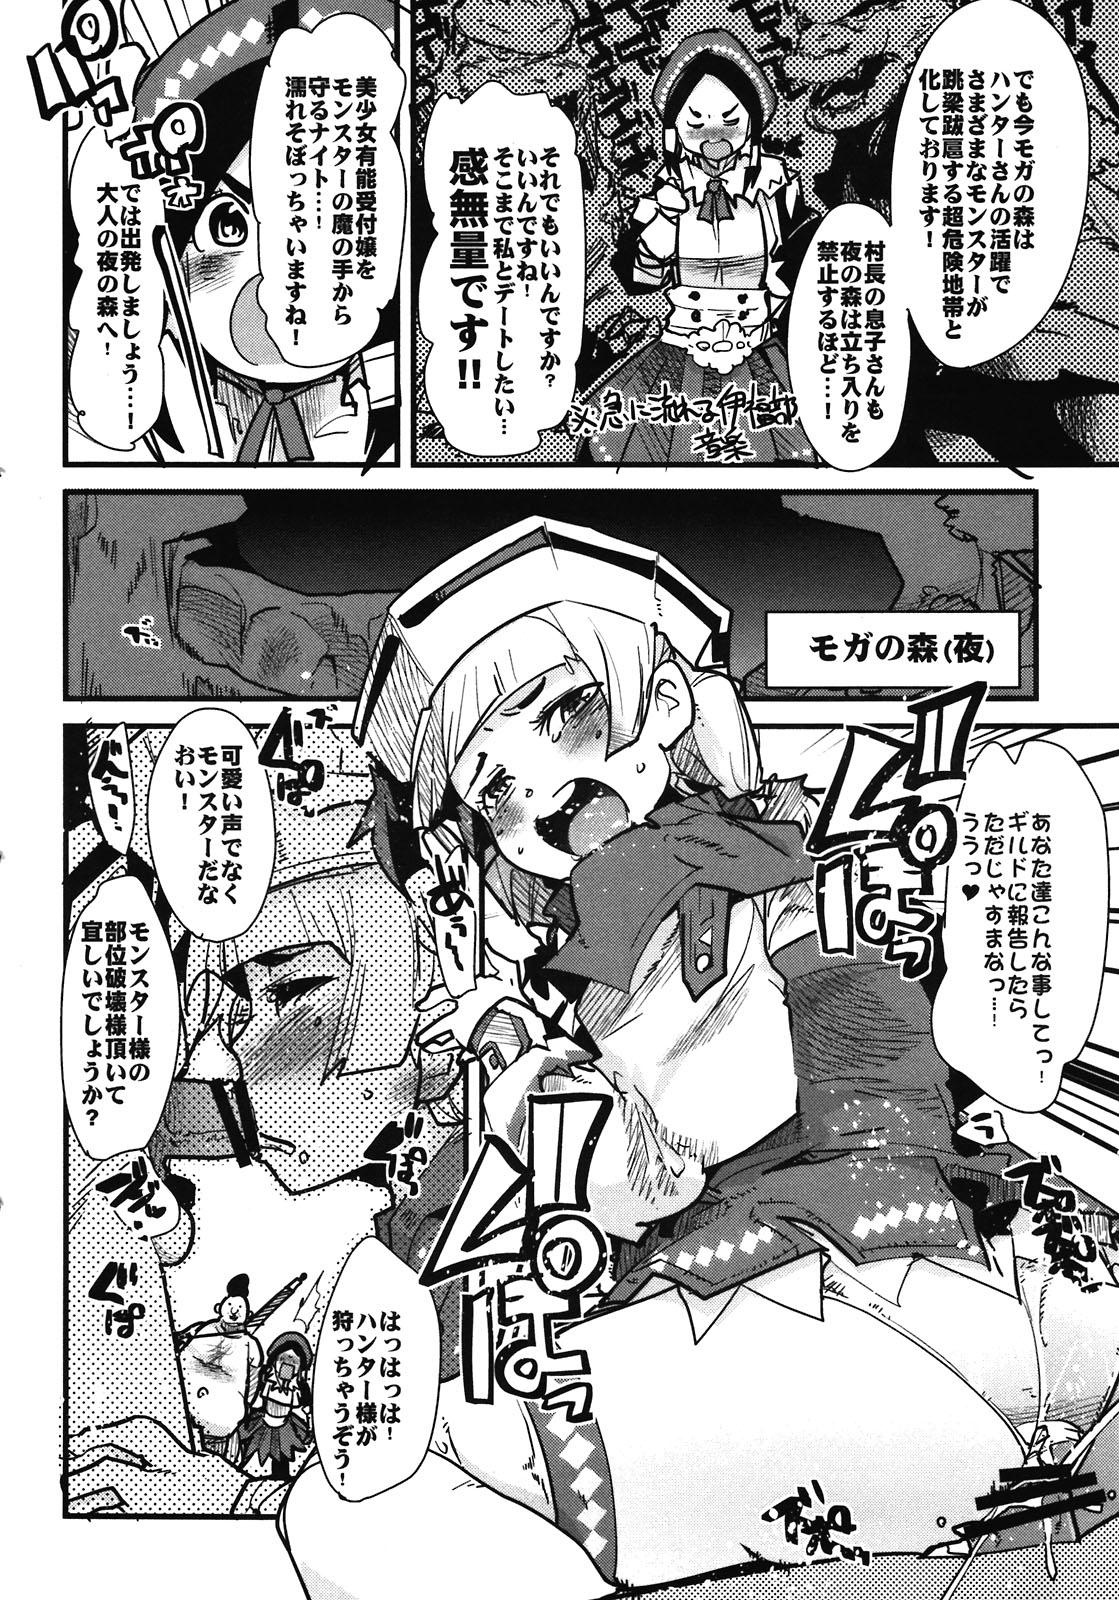 Masterbation Suteki Kanbanmusume 2 - Monster hunter Sissy - Page 4